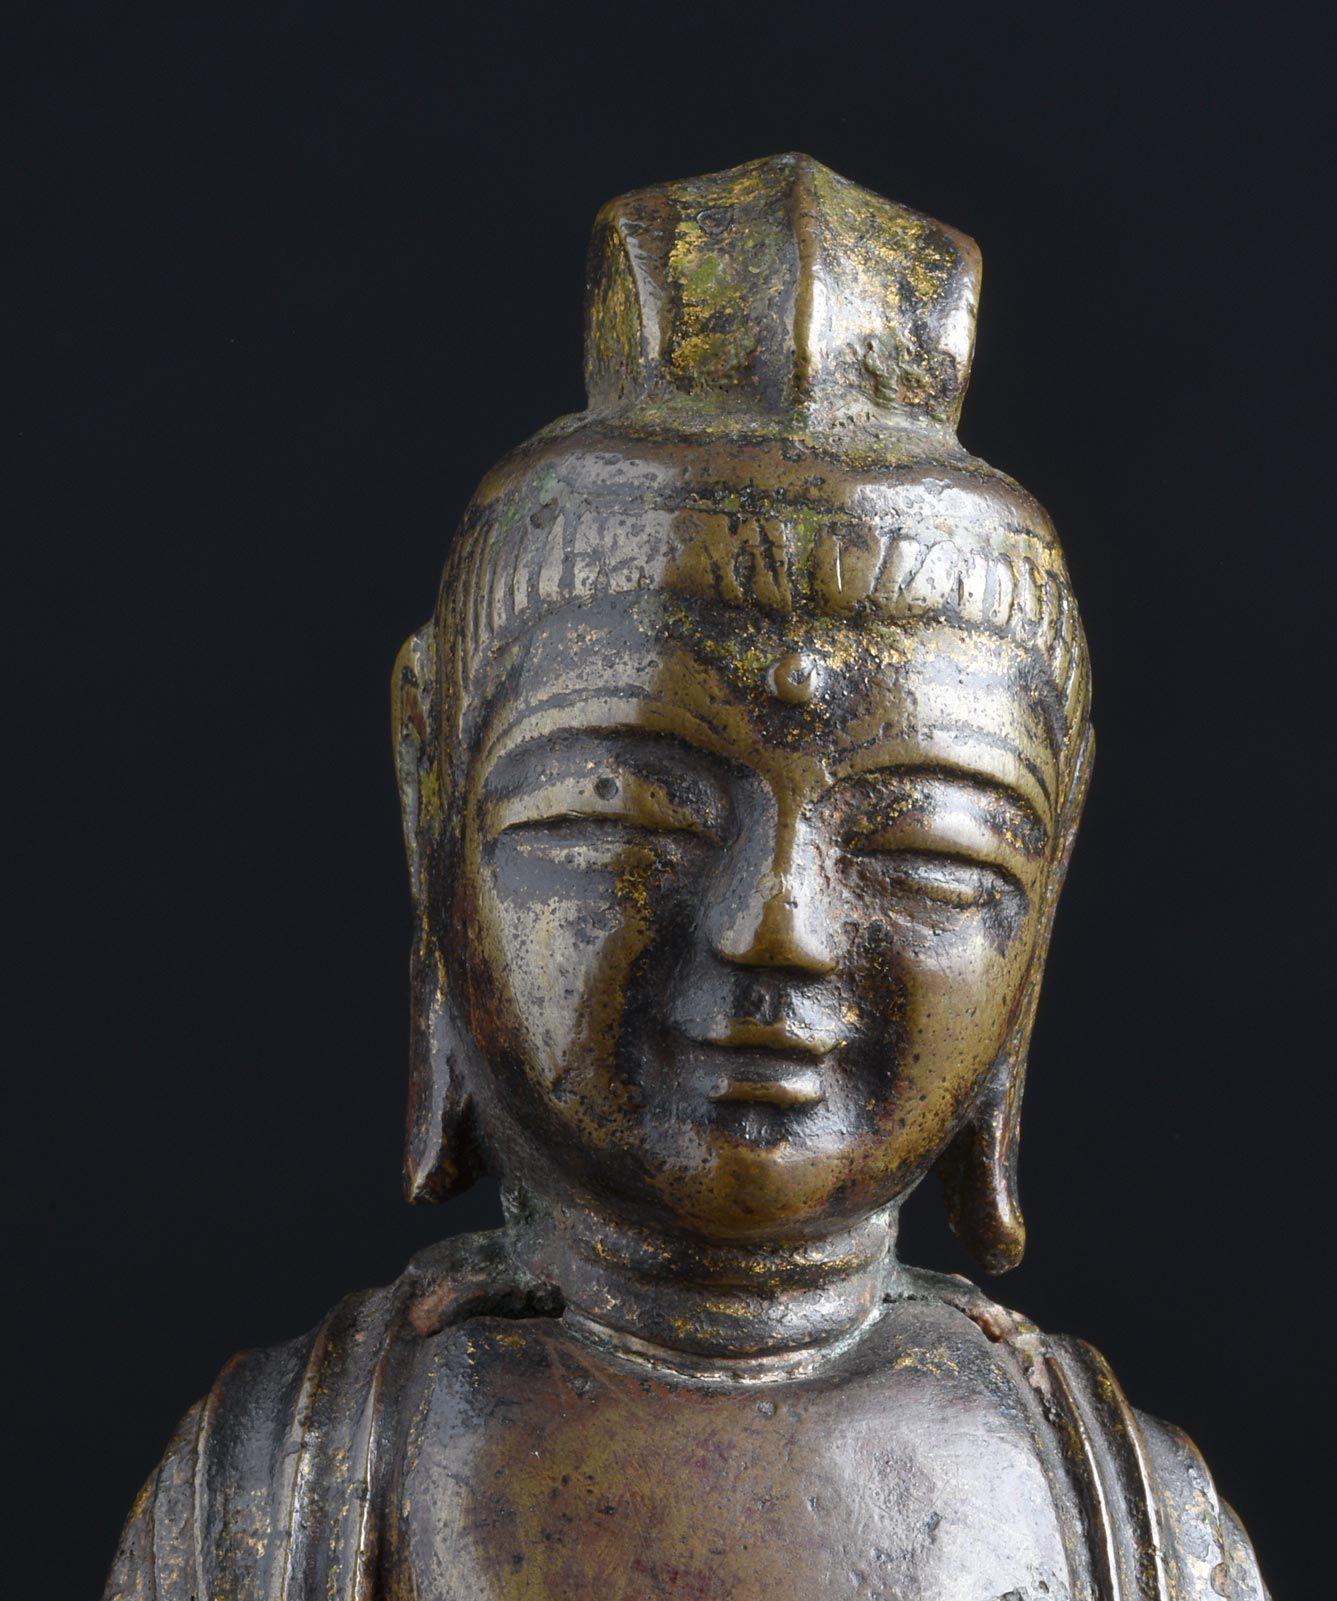 Cast 7/8thC Korean Bronze Bodhisattva - 9001 For Sale